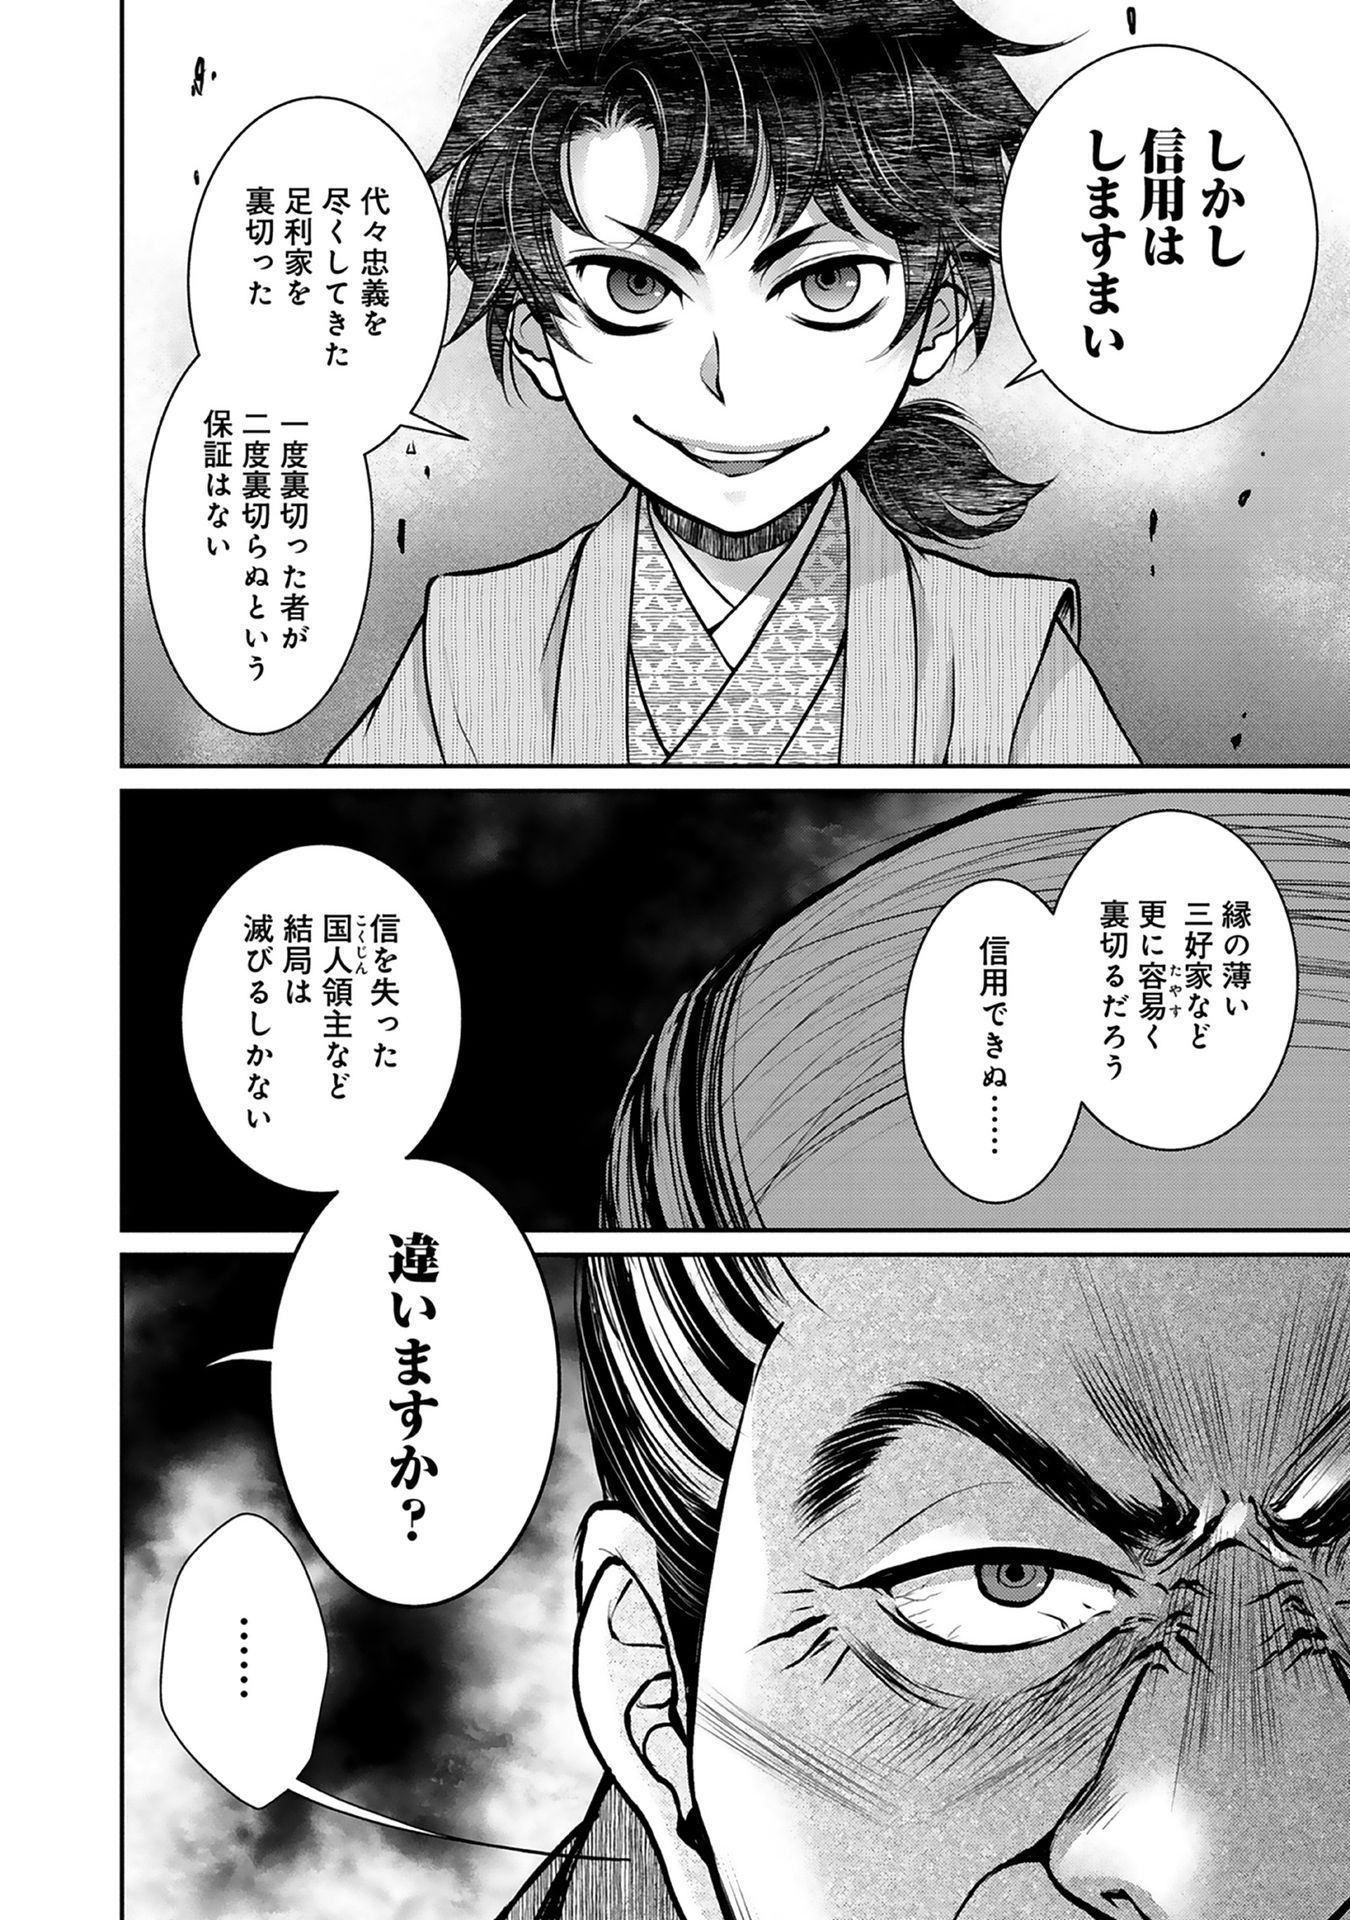 Afumi no Umi – Minamo ga Yureru Toki - Chapter 3 - Page 2